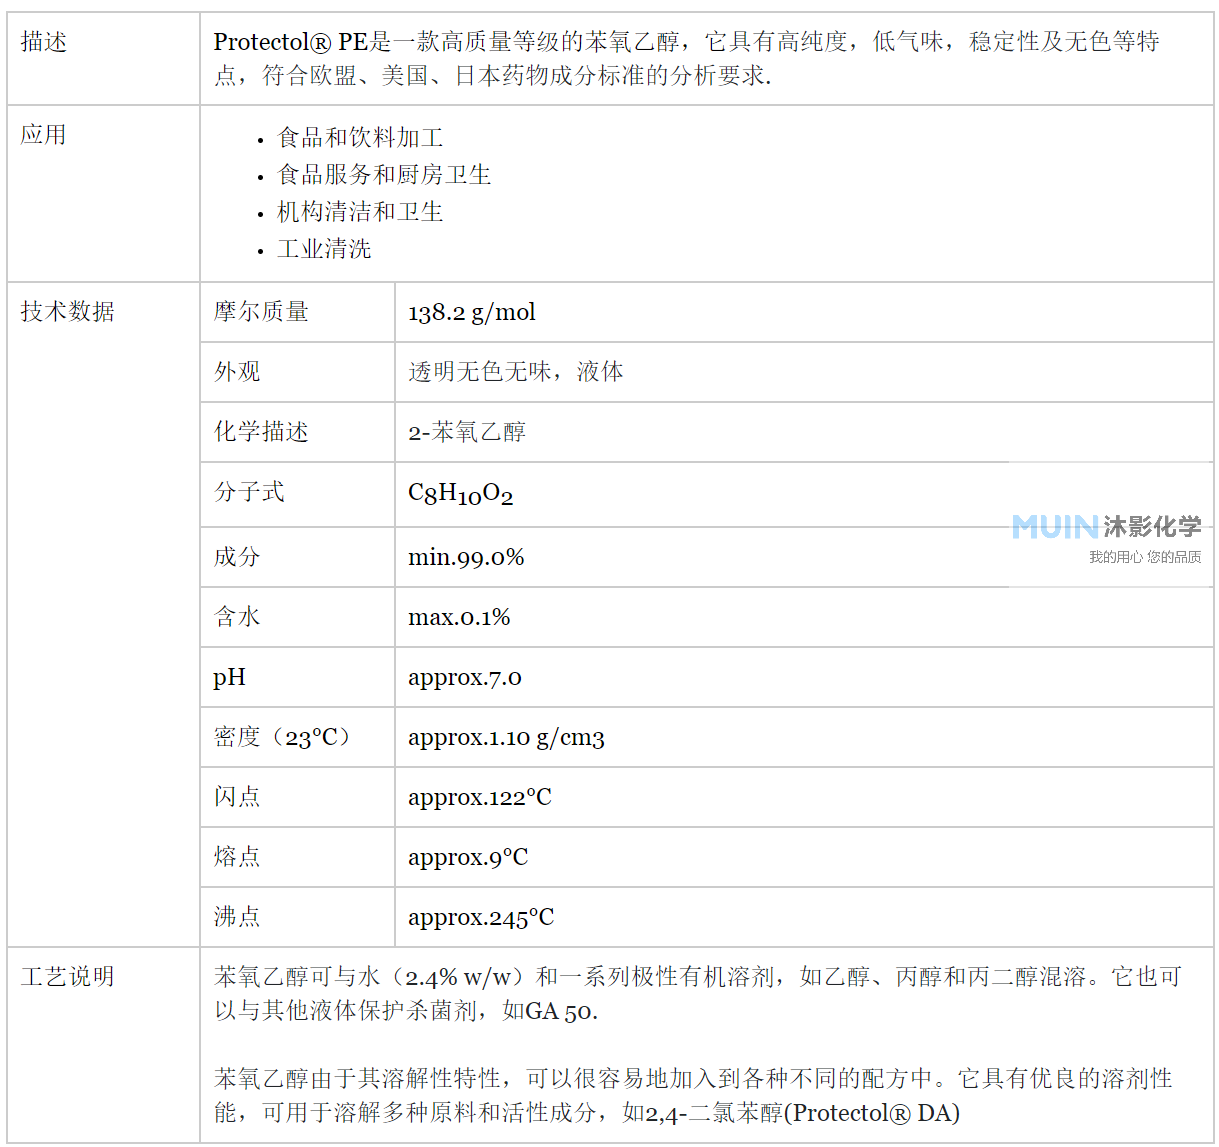 巴斯夫在中国正式推出锐收® 系列新型杀菌剂_农化专利网